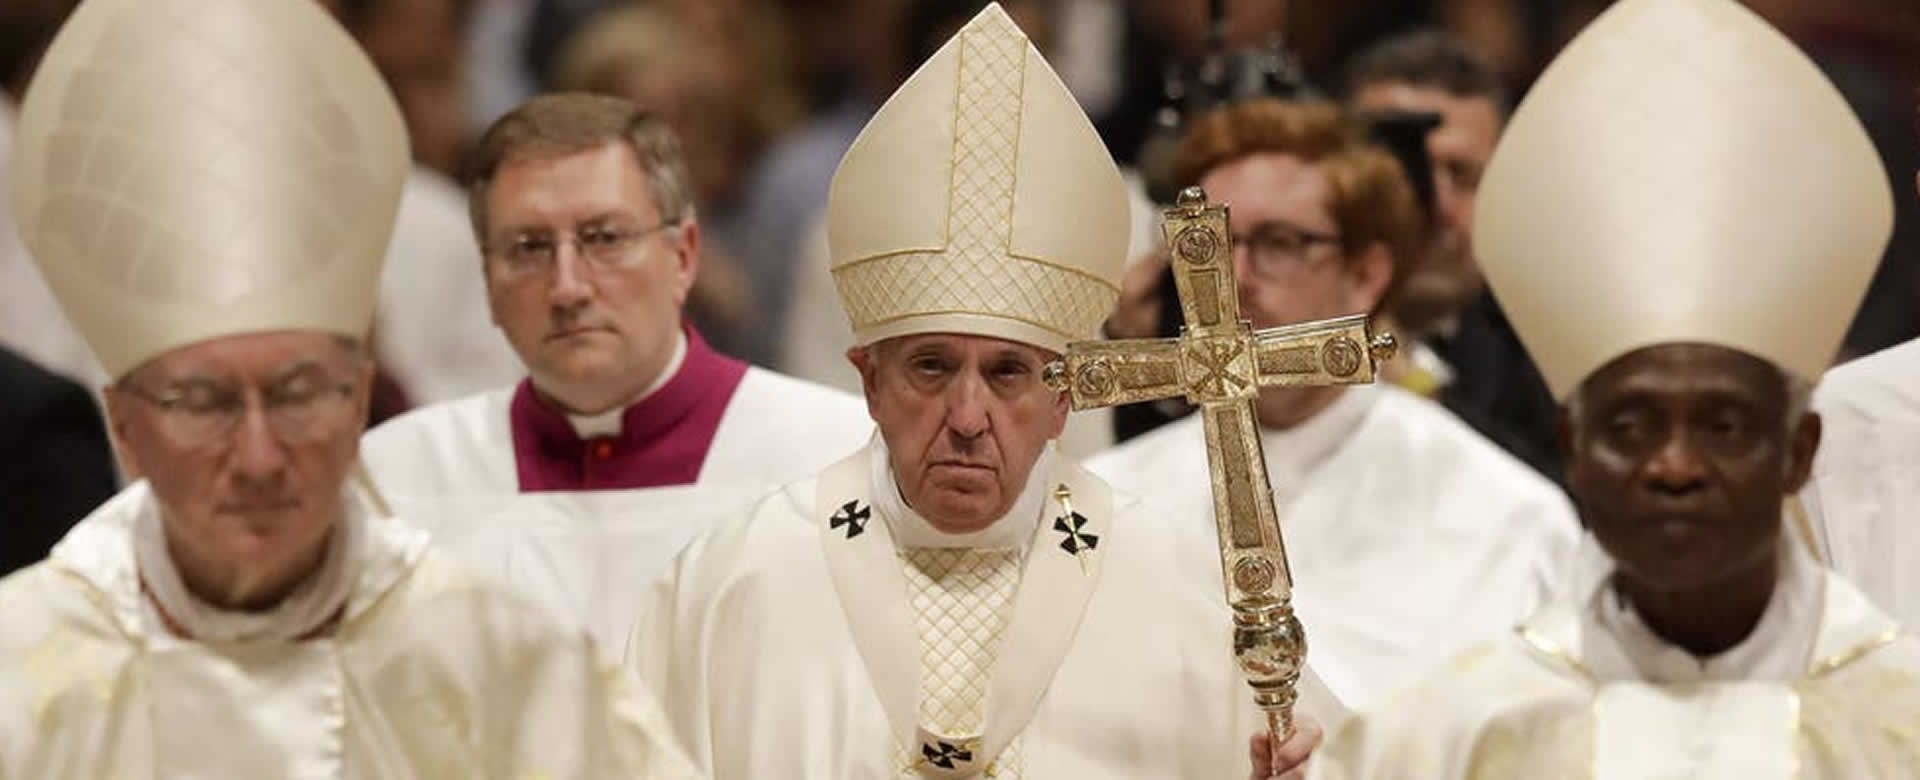 Francisco proclamó a 13 nuevos cardenales, entre ellos dos latinoamericanos